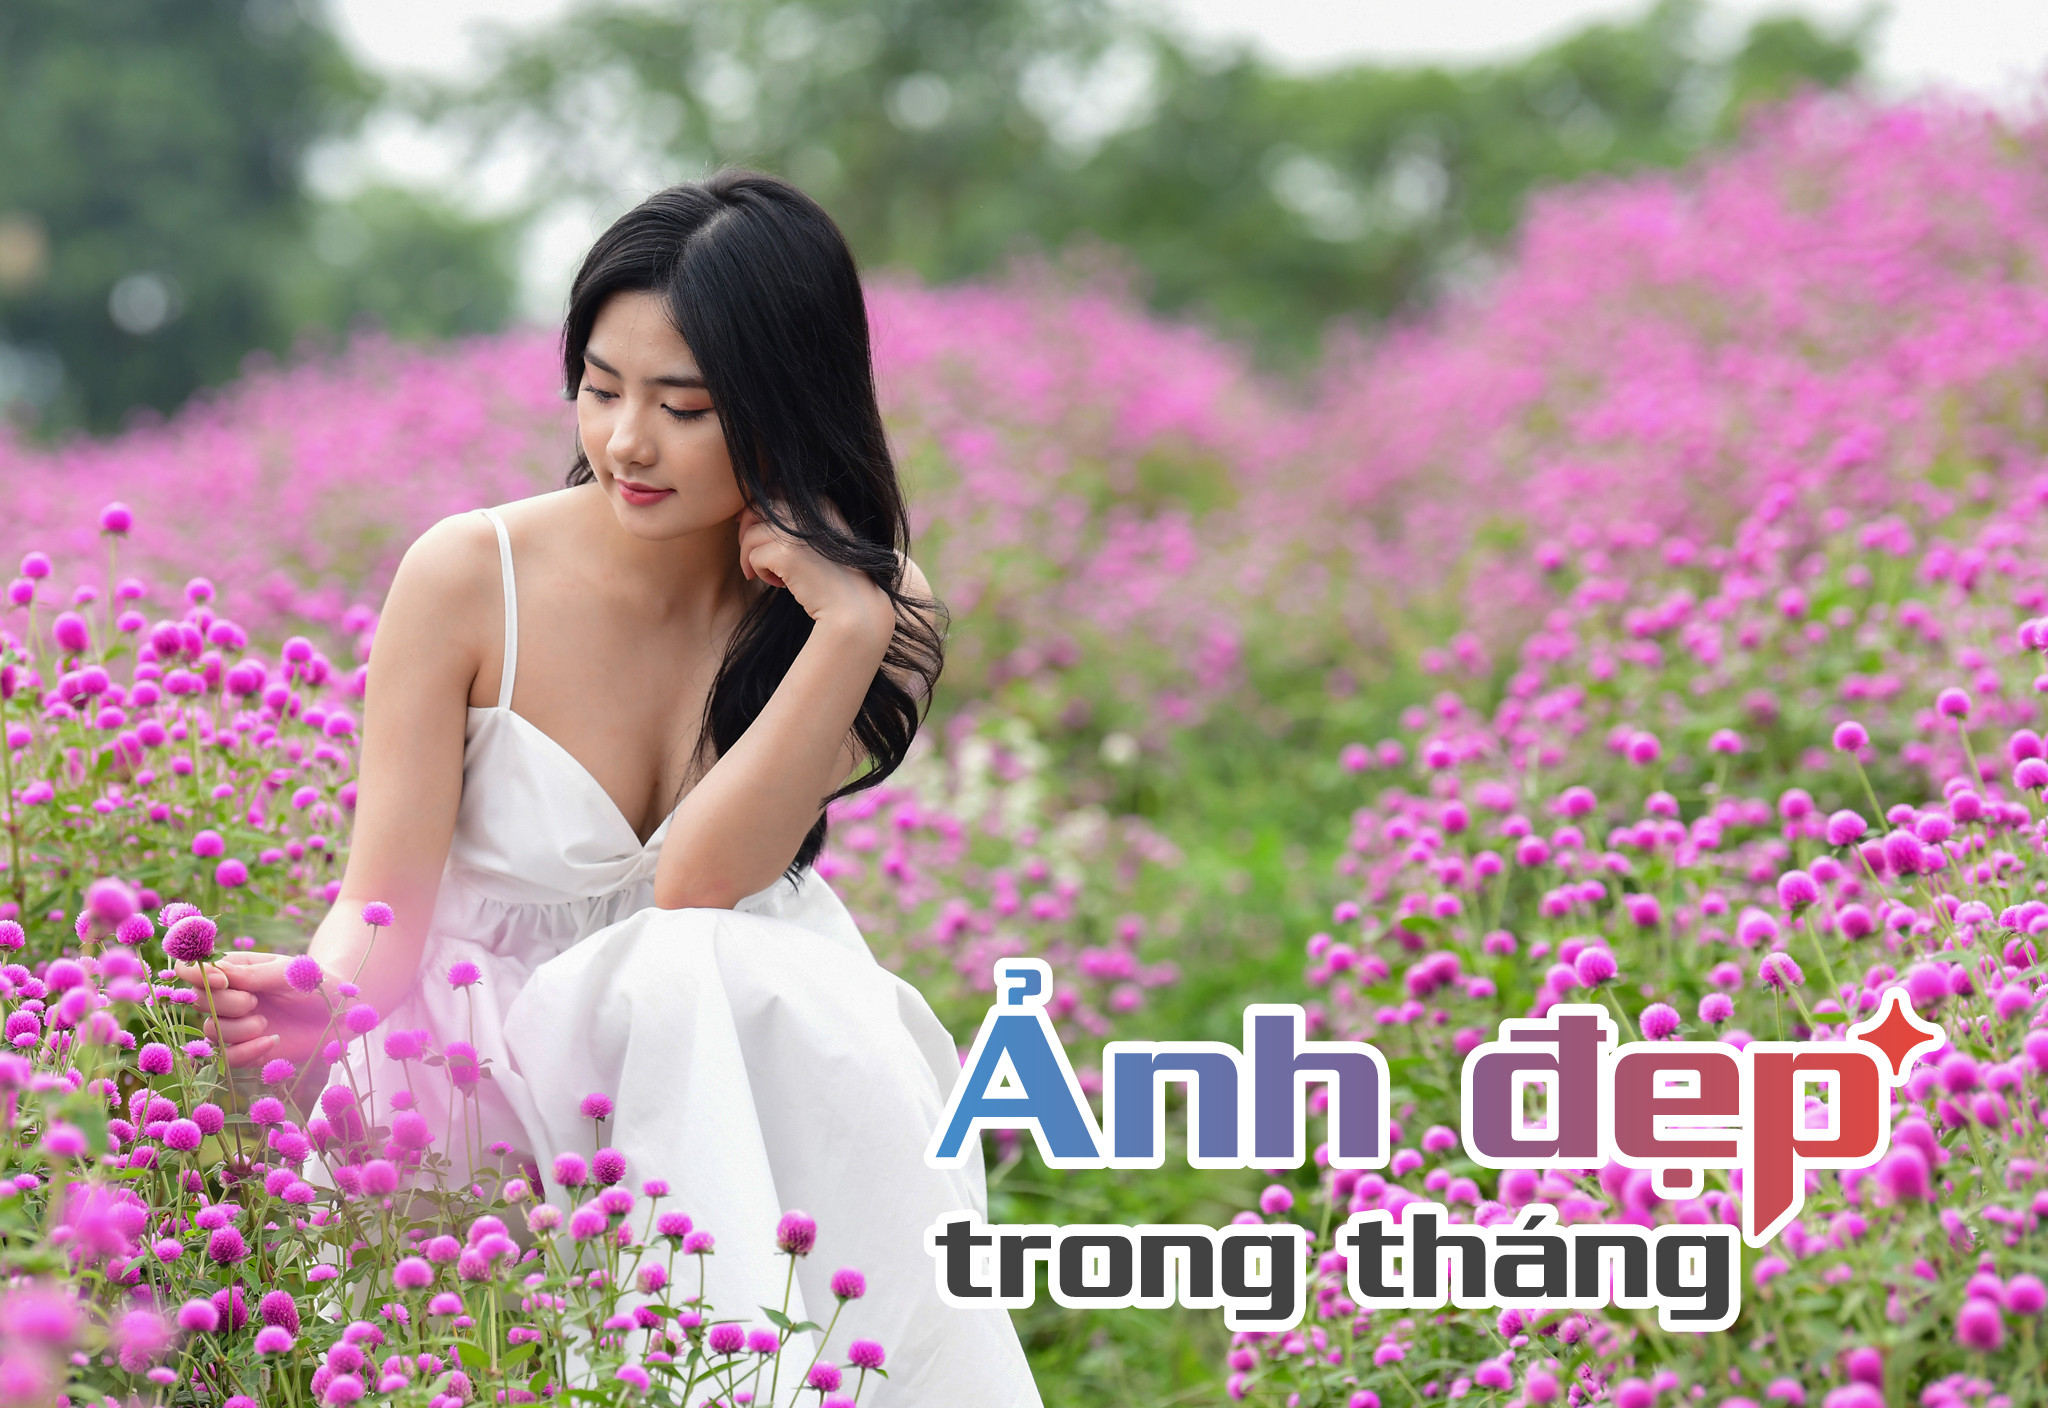 Ảnh đẹp tháng 11 trên VietNamNet